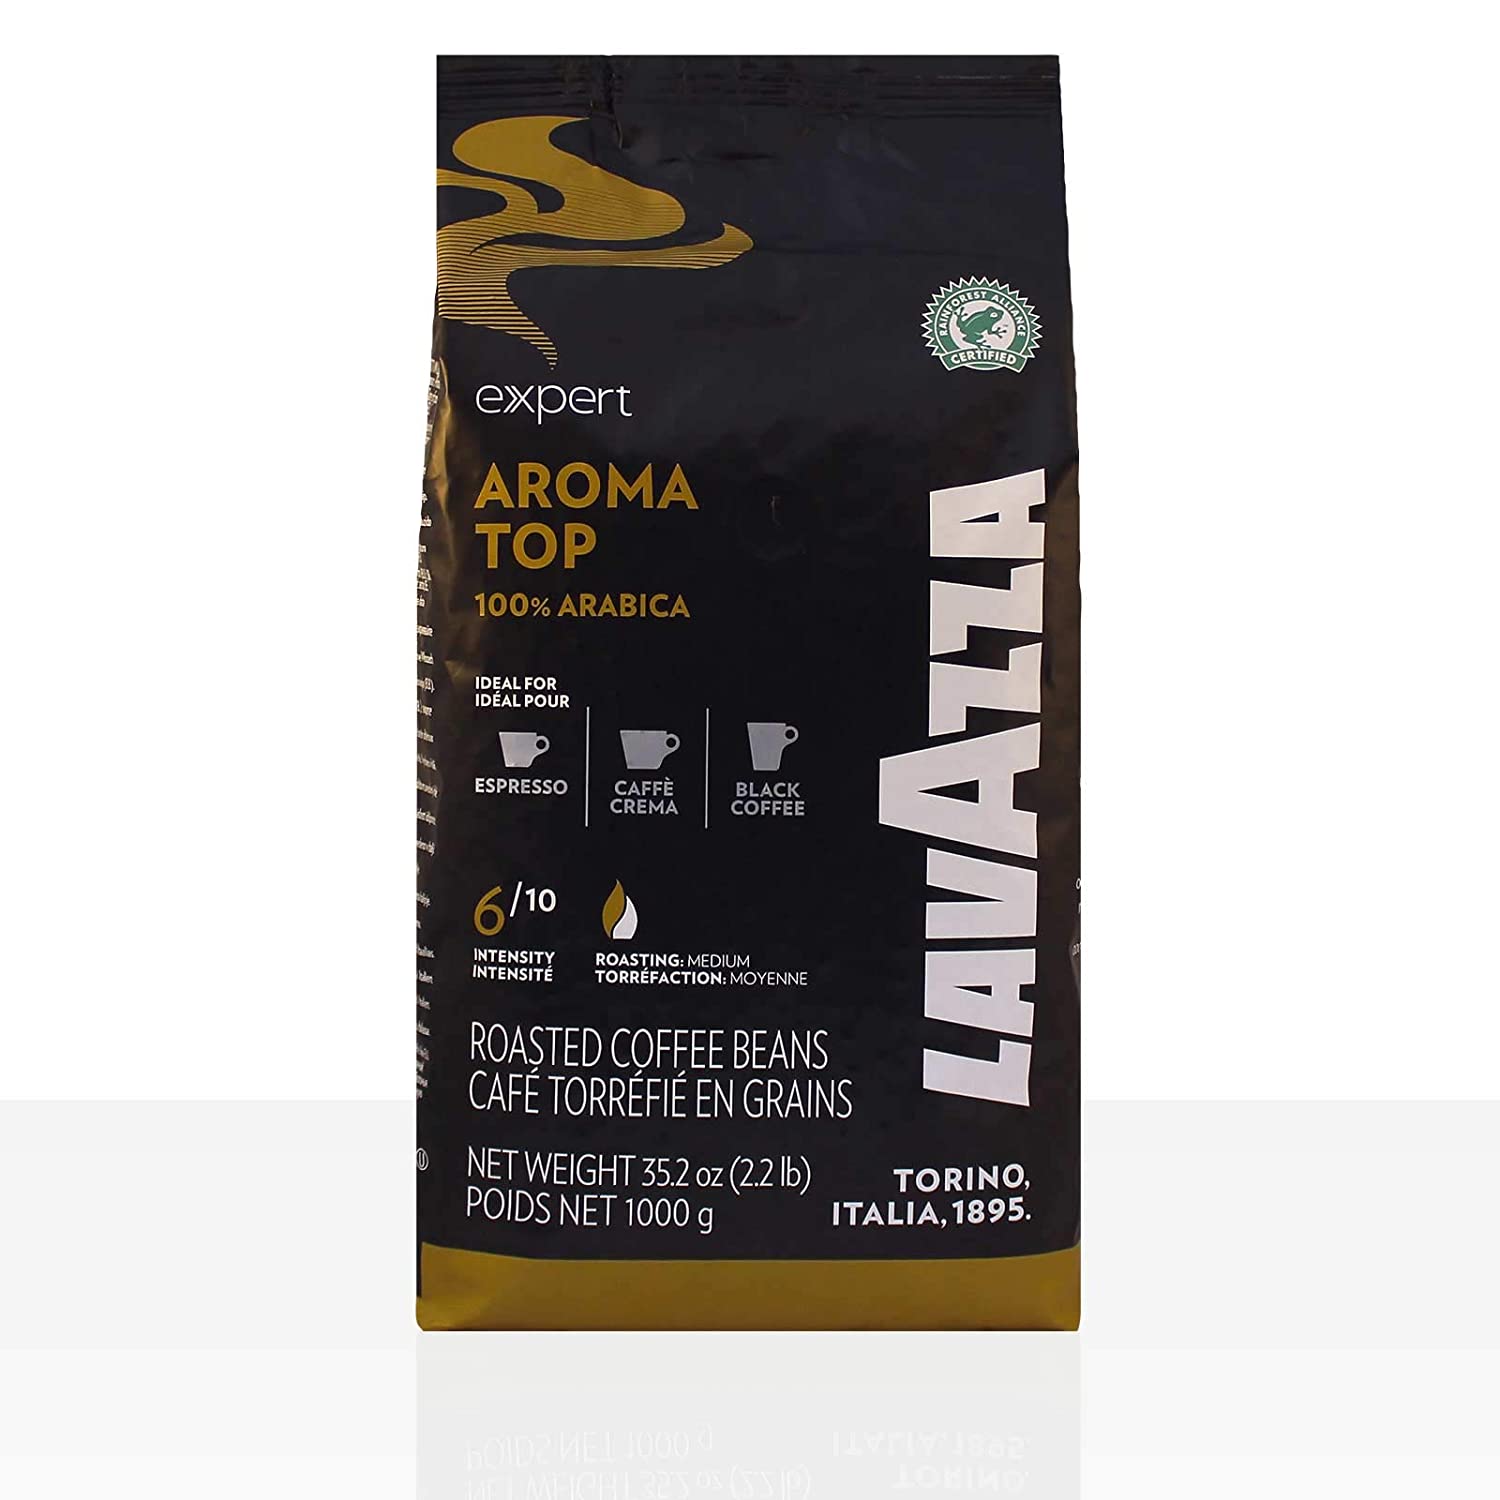 Lavazza Espresso Vending - Aroma Top (6 x 1000 g) Full Bean